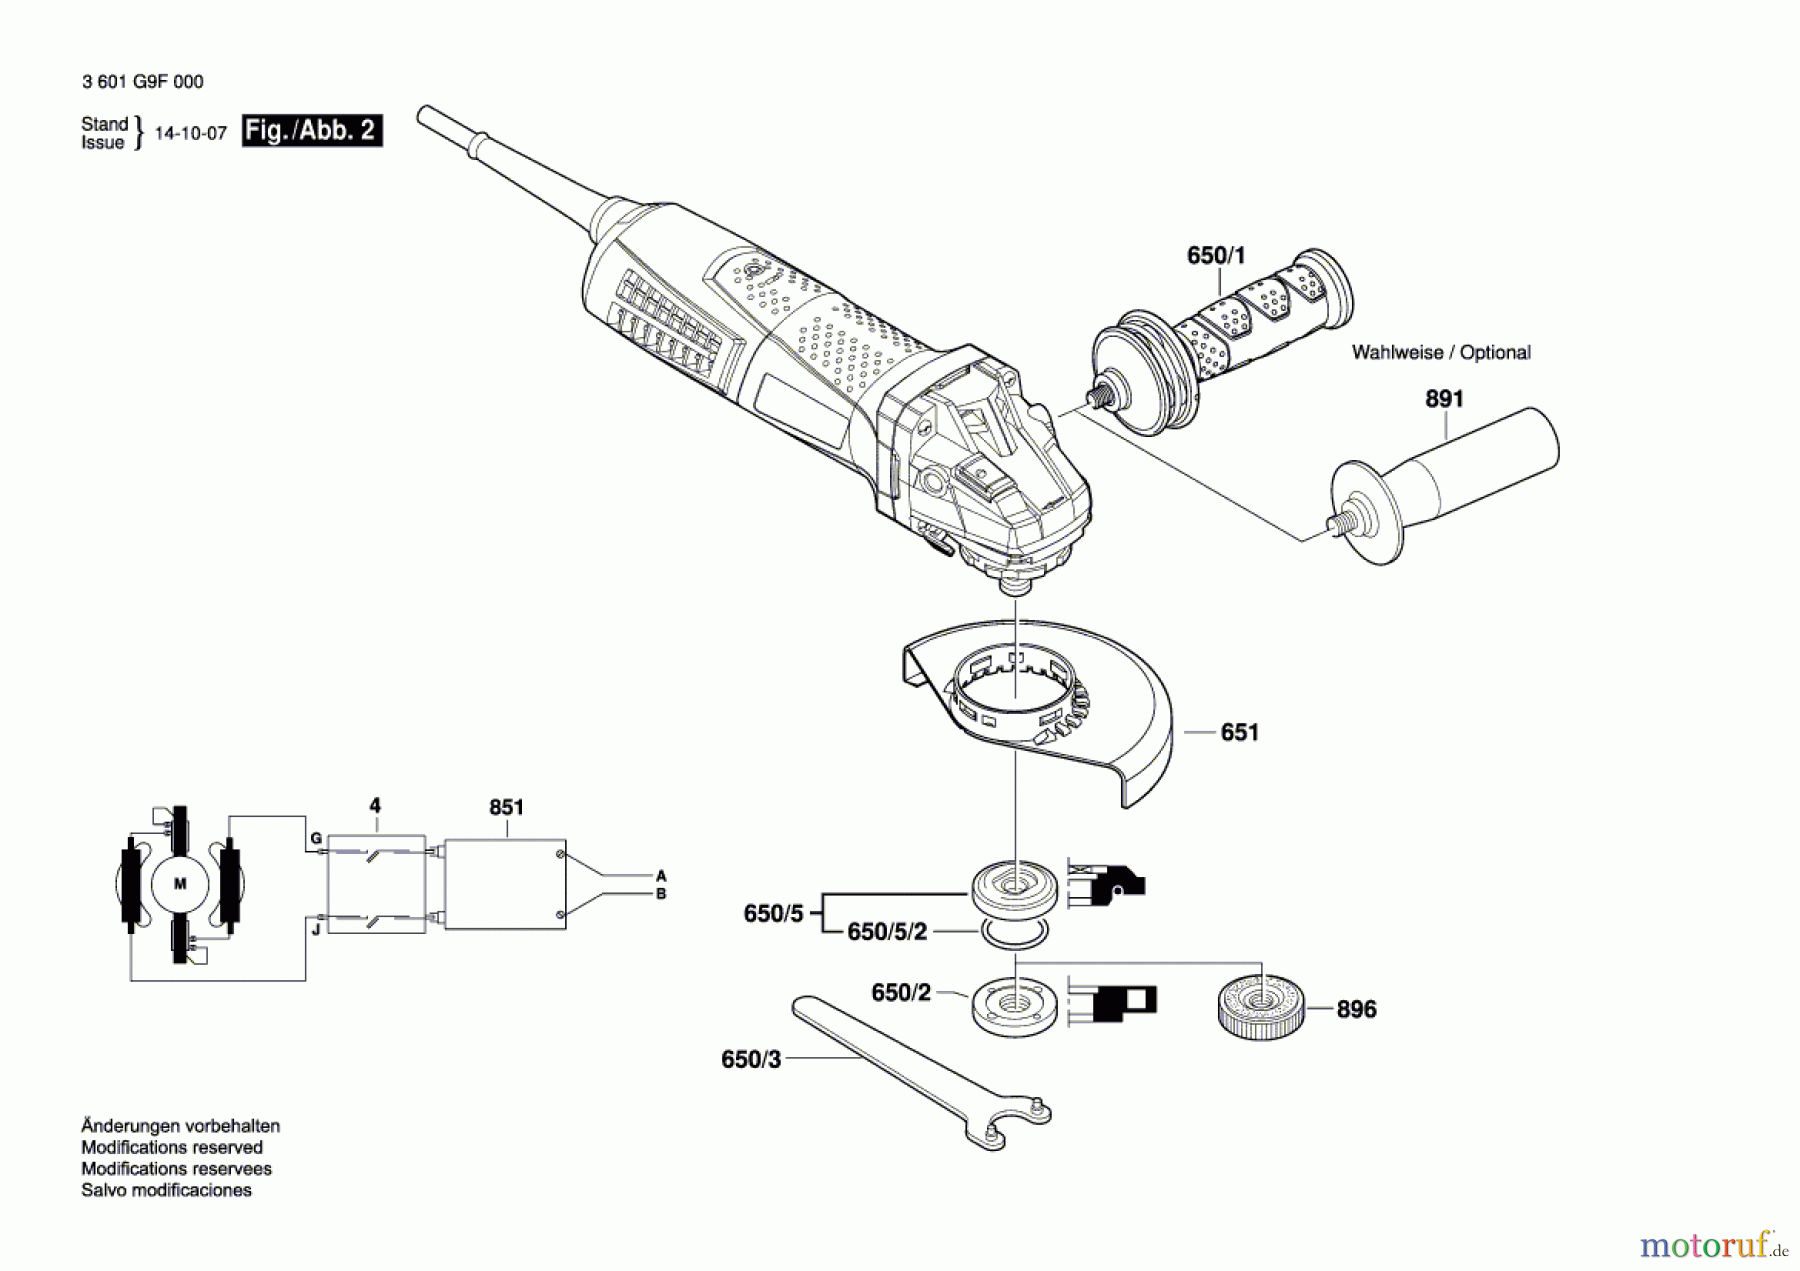  Bosch Werkzeug Winkelschleifer GWS 13-125 CIE Seite 2